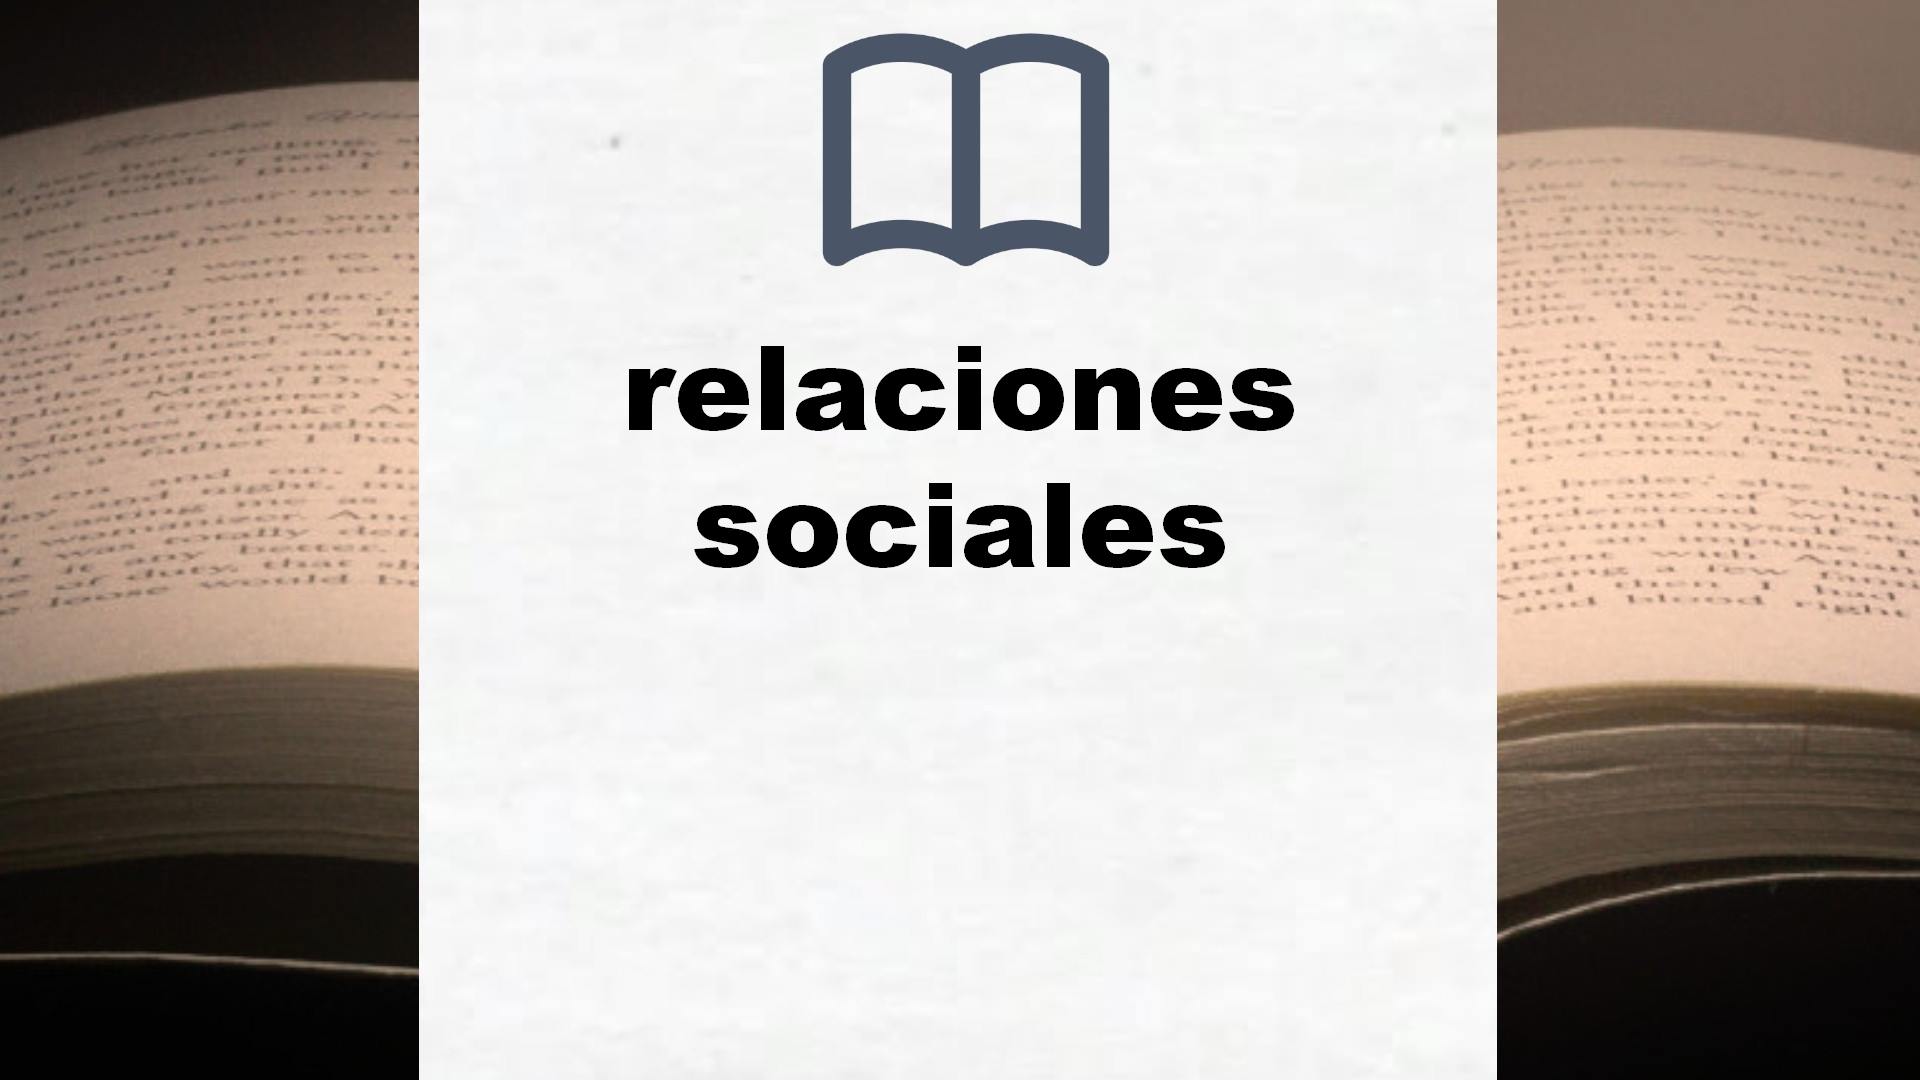 Libros sobre relaciones sociales